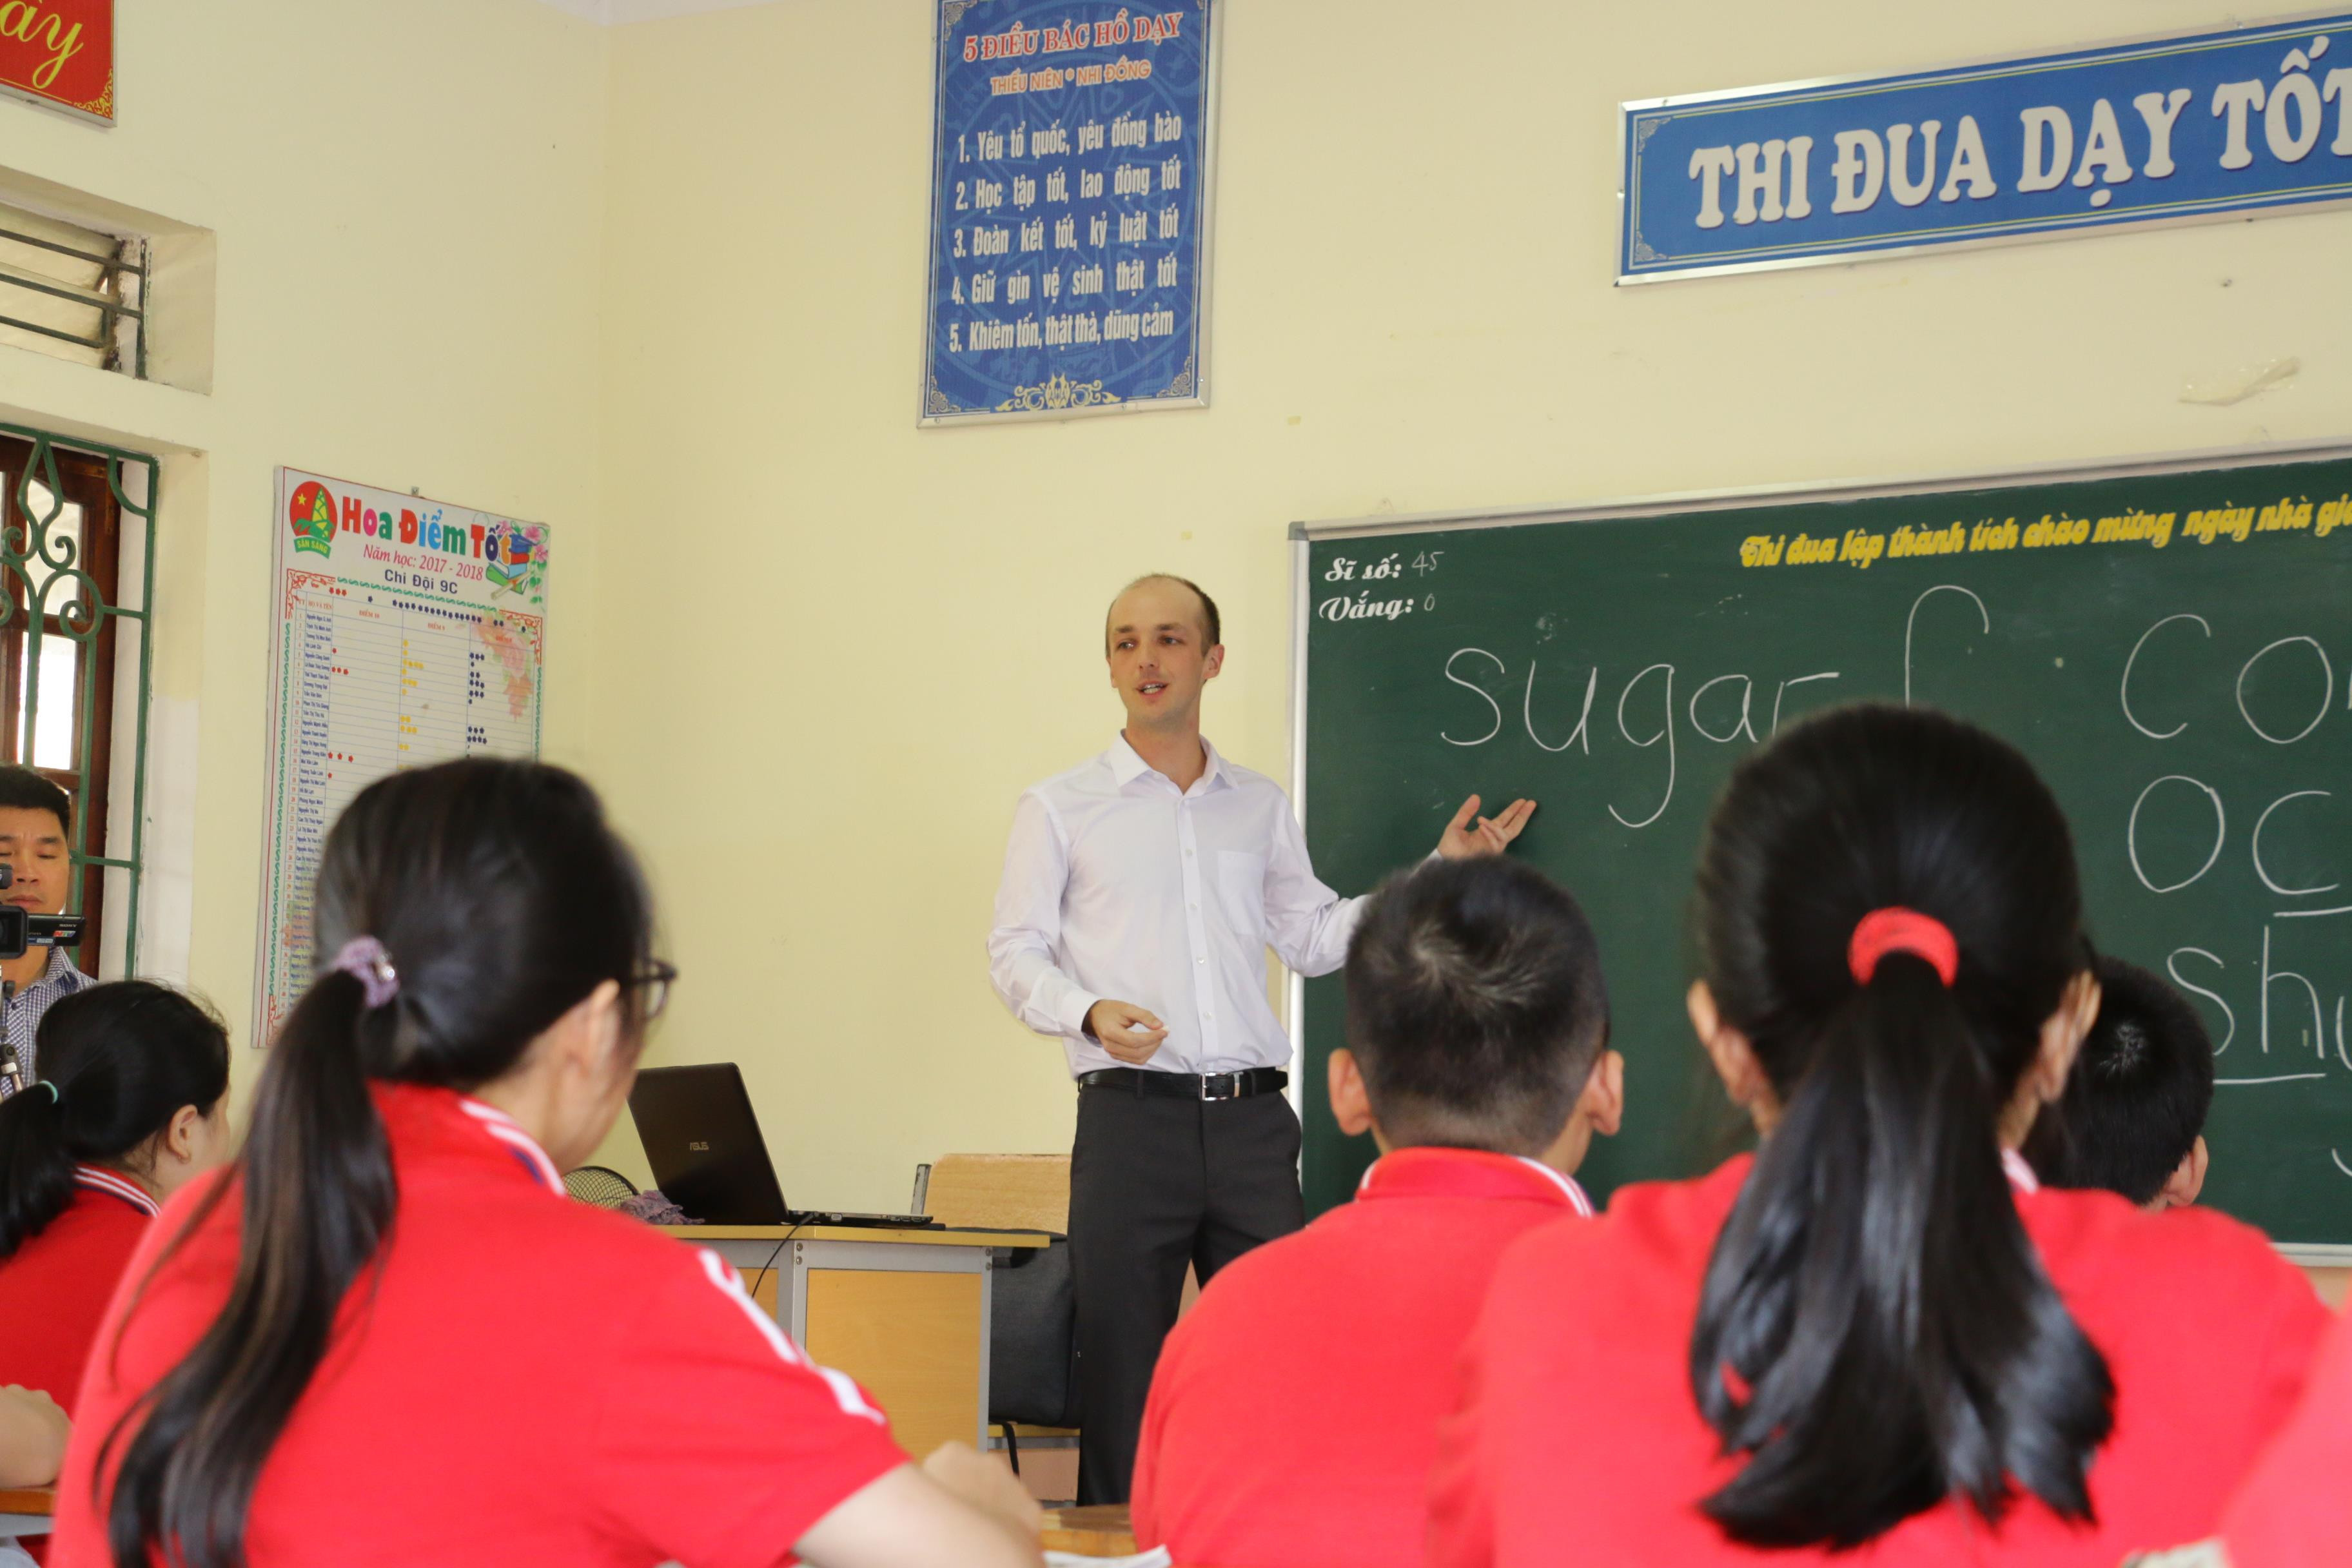 Năm học 2019 - 2020, Nghệ An sẽ đẩy mạnh việc dạy Tiếng Anh trong các nhà trường, hướng tới chuẩn quốc tế. Ảnh: Mỹ Hà